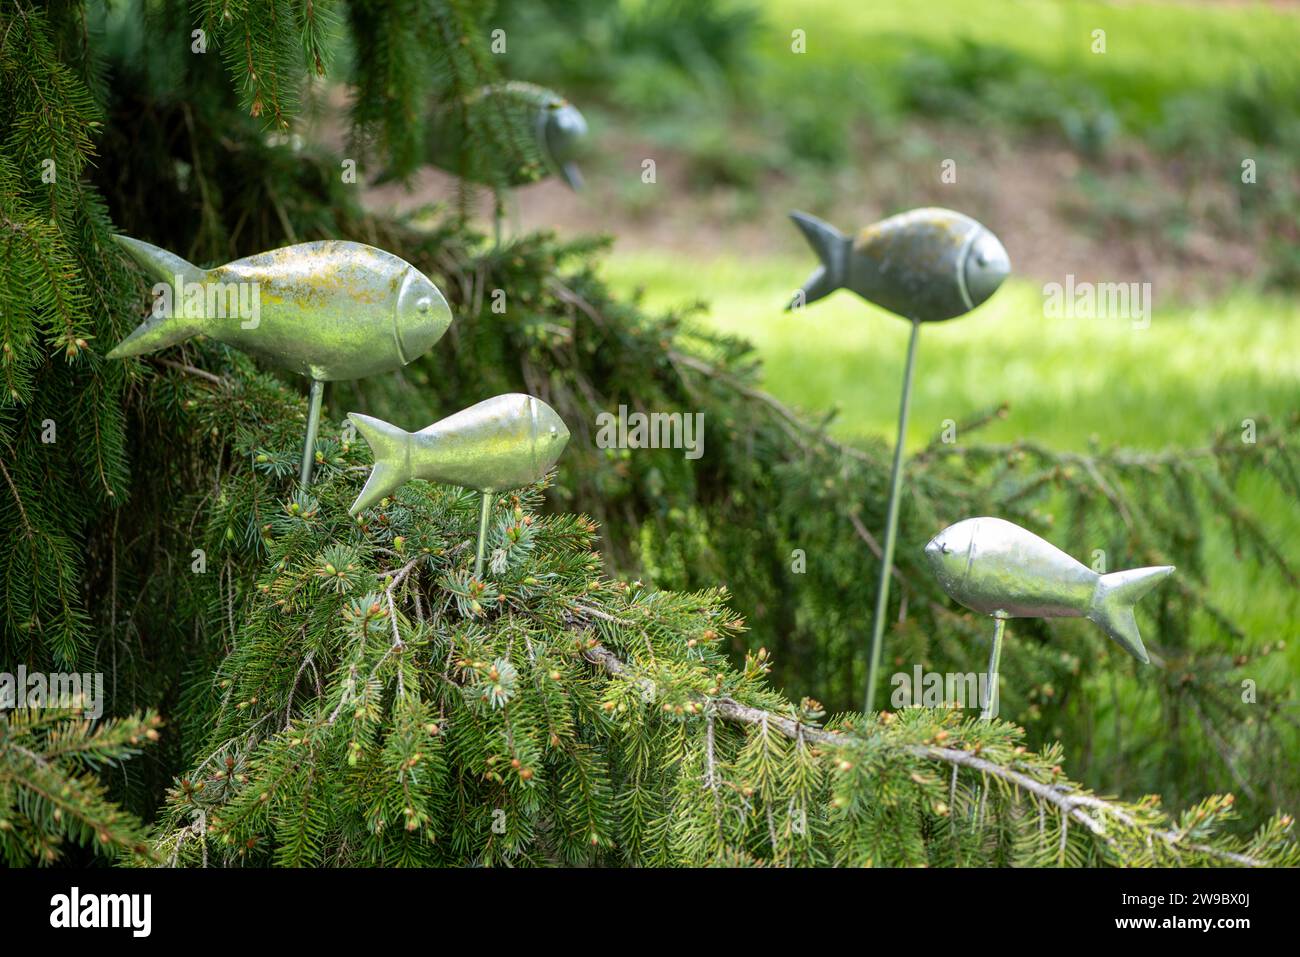 statues de poissons en métal fantaisistes nageant dans le jardin Banque D'Images